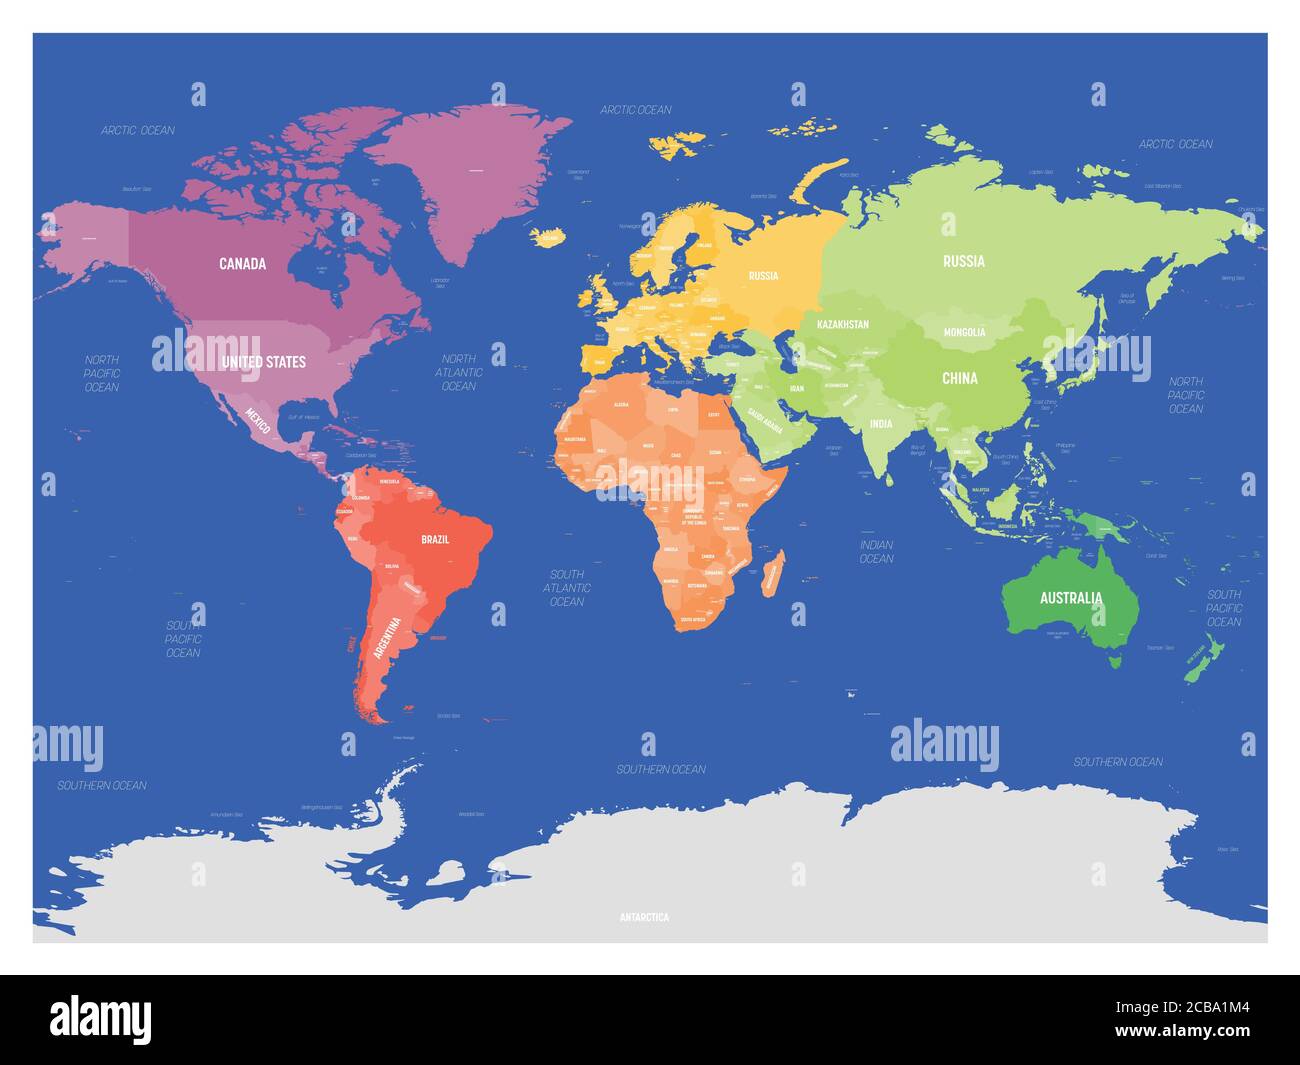 Colorata mappa politica del mondo divisa in sei continenti su sfondo blu scuro. Con paesi, capitali, mari e oceani etichette. Illustrazione vettoriale. Illustrazione Vettoriale